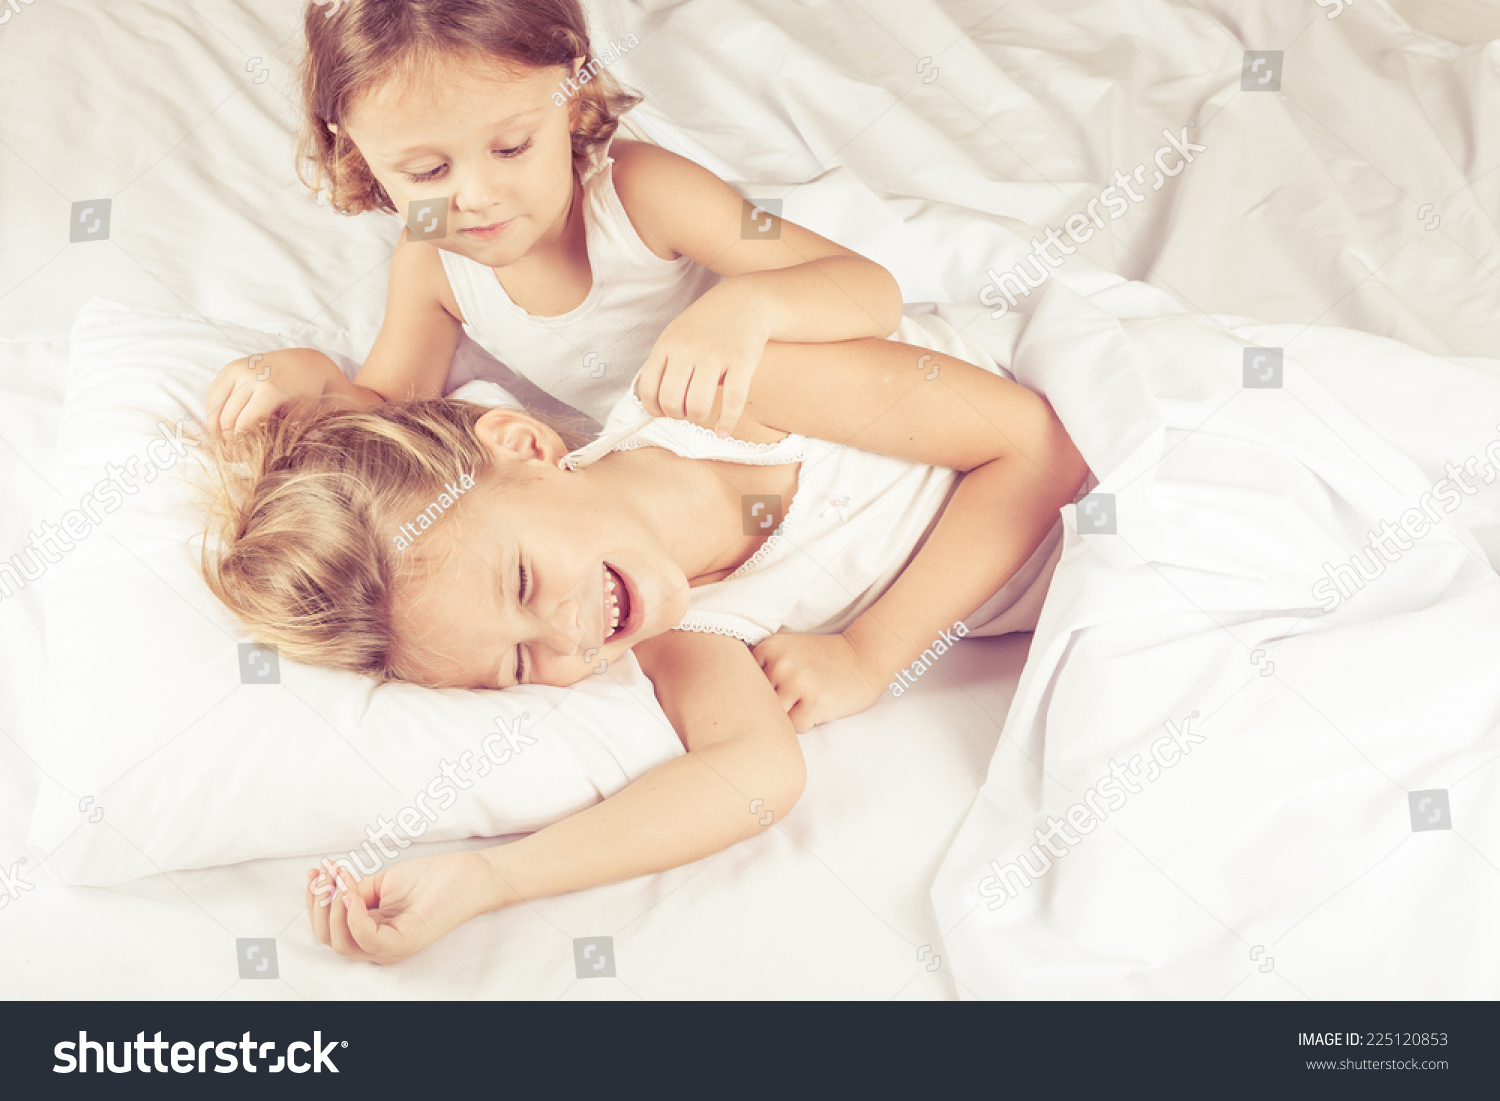 Пришел к сестре в постель. Братик и сестричка в кровати. Сестрички в постели. С сестренкой в постели. Кровать для сестренок.